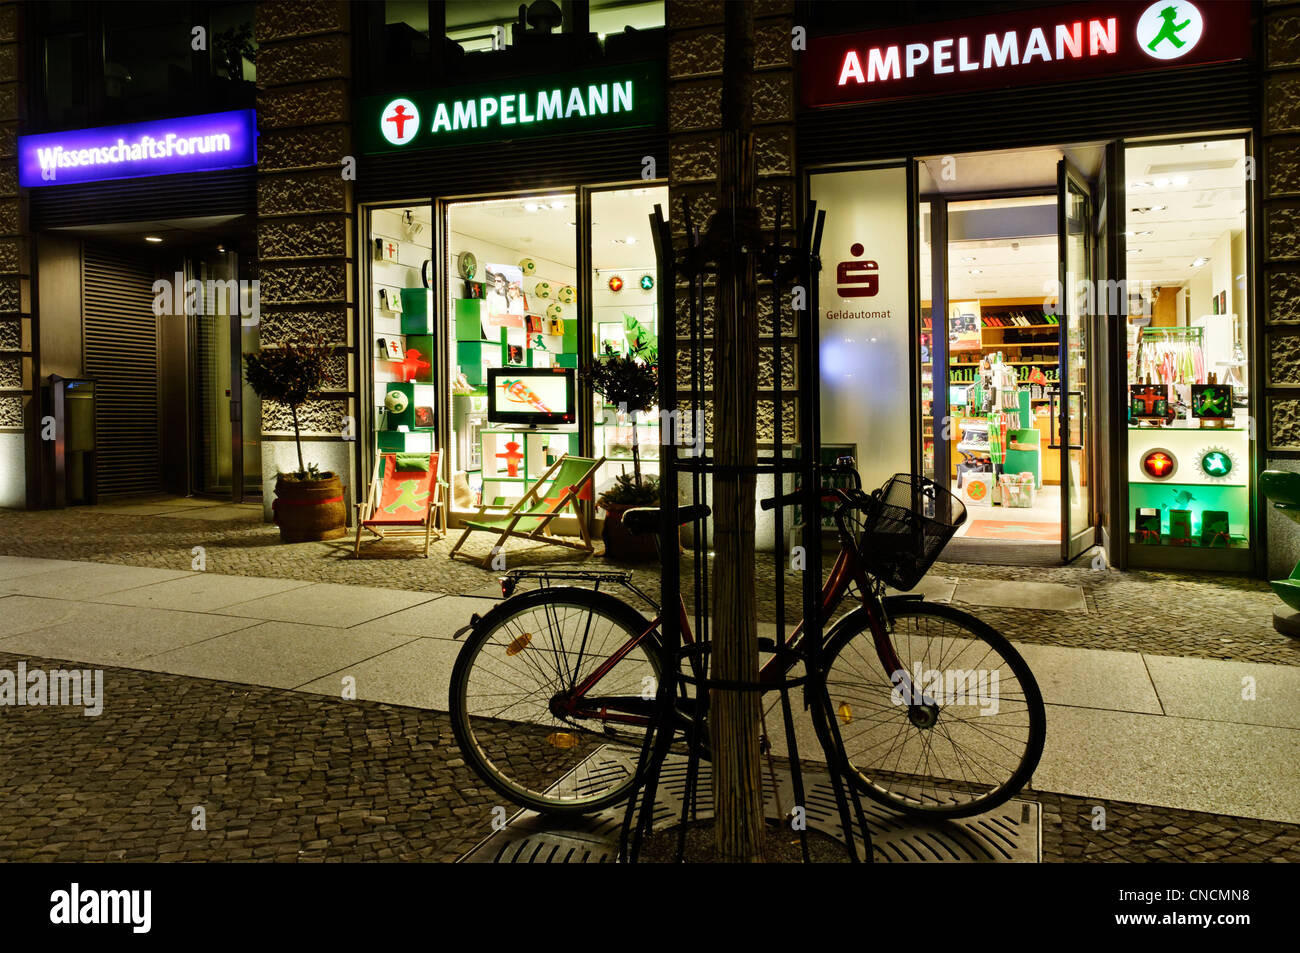 Une boutique à Berlin Ampelmann dans la nuit Banque D'Images